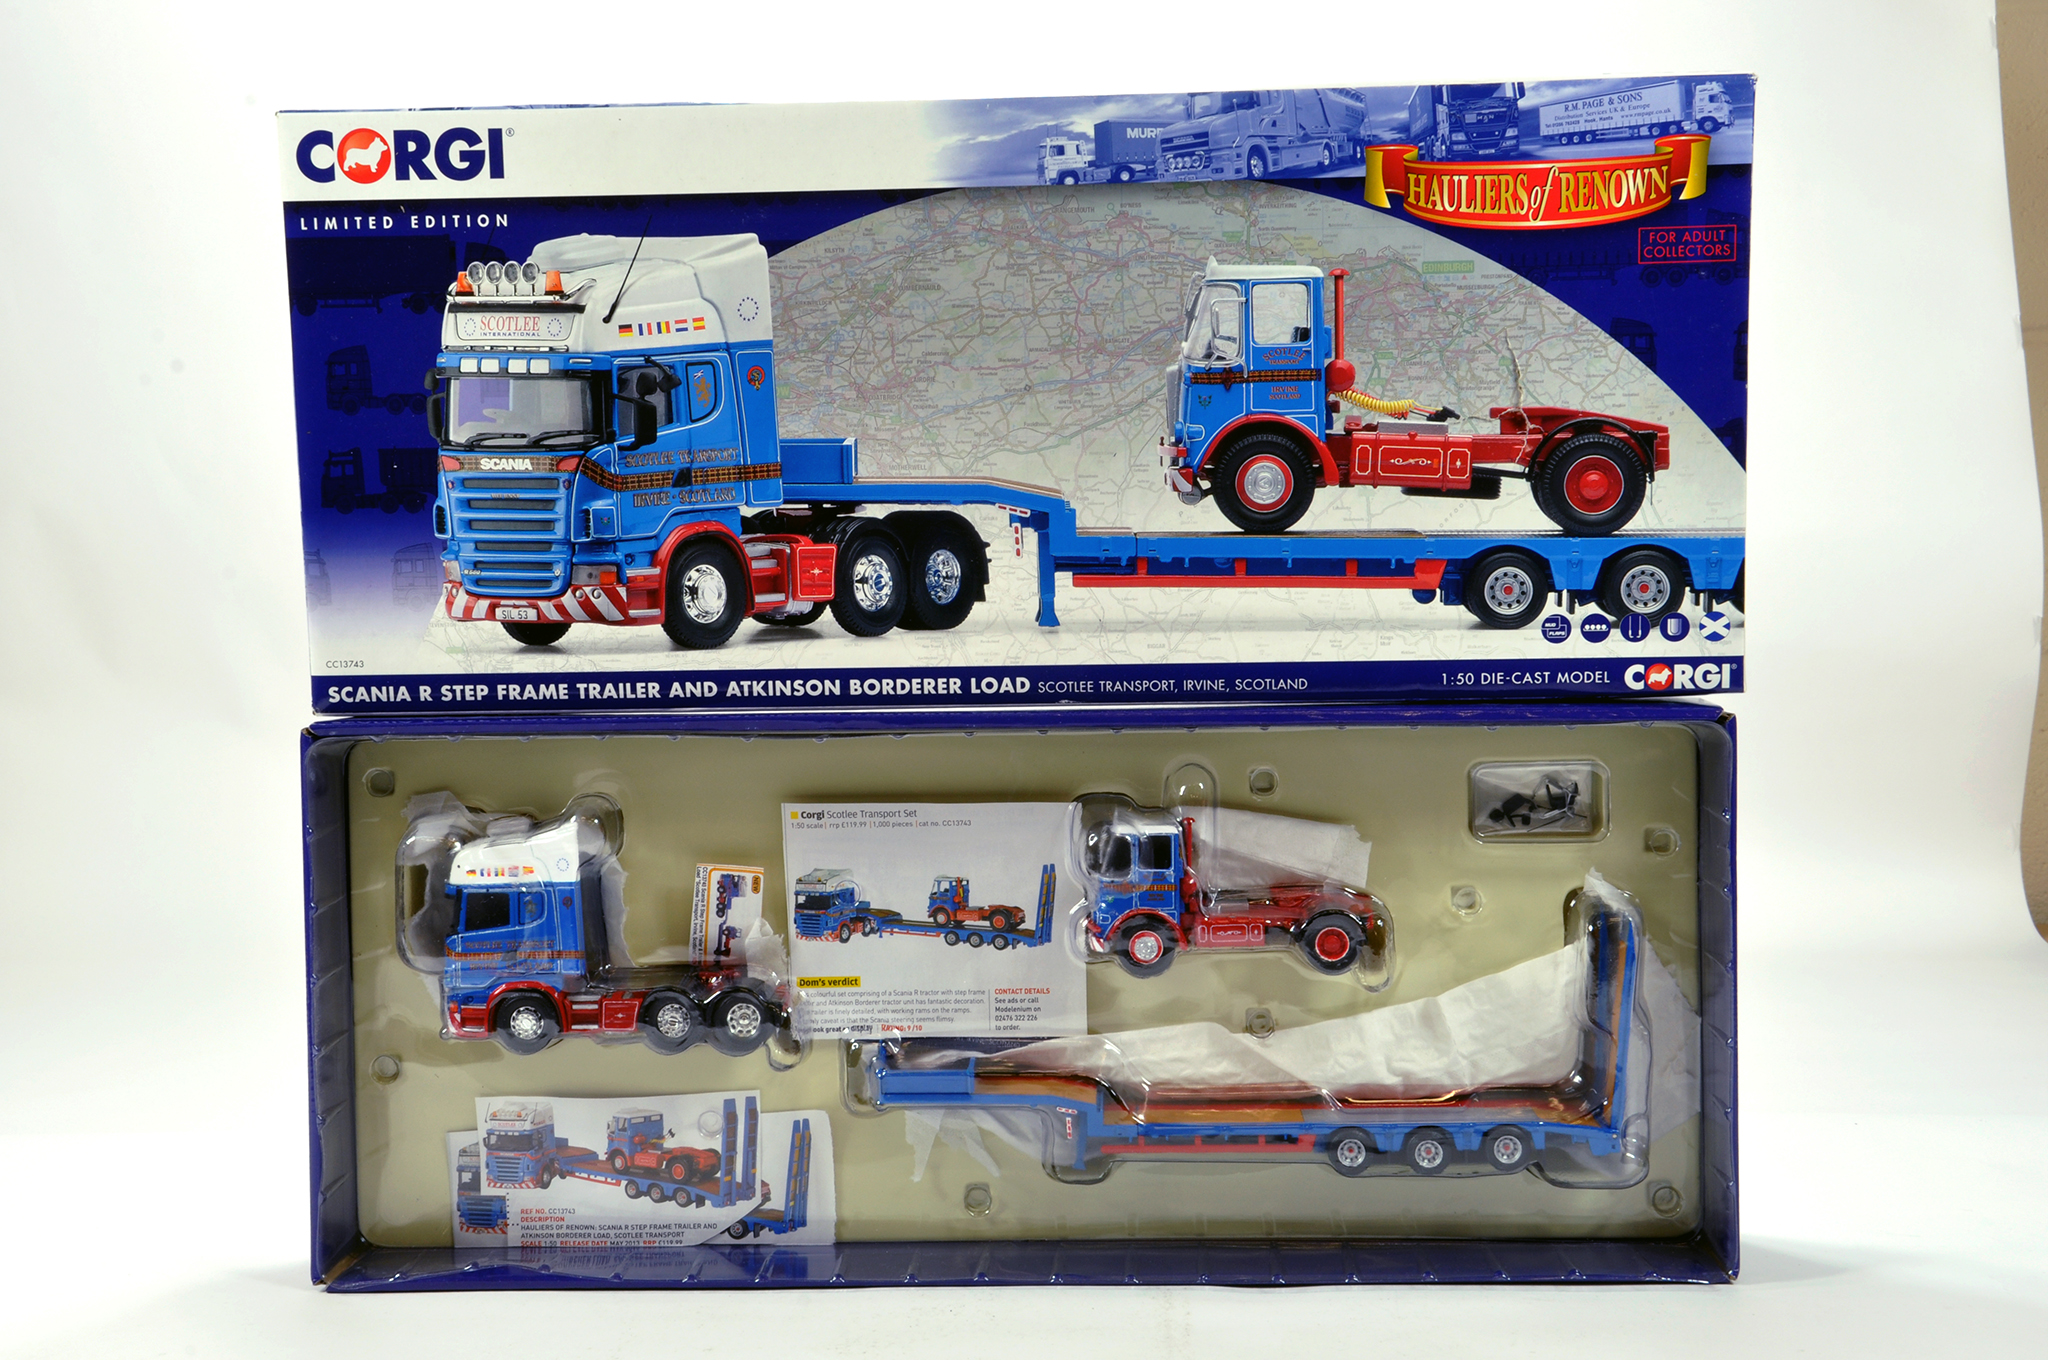 Corgi 1/50 diecast truck issue comprising No. CC13743 Scania R Stepframe Trailer and Atkinson